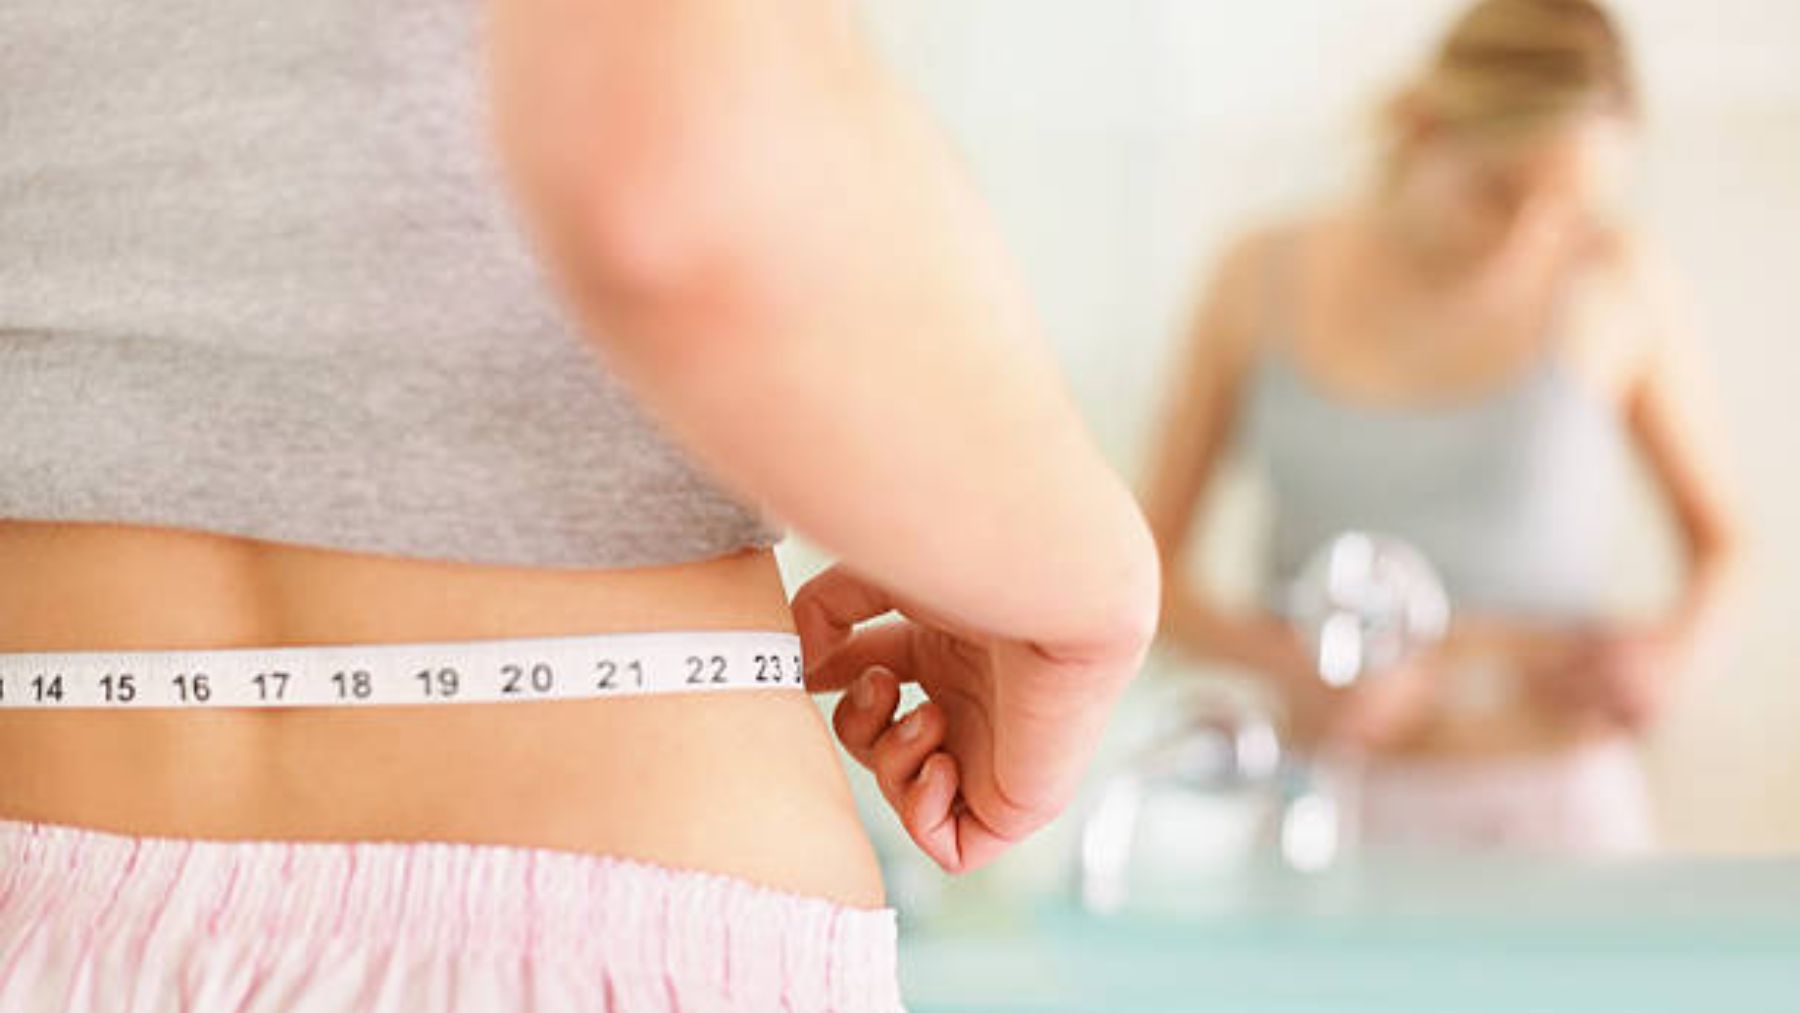 Dieta relámpago: como perder 5 kg en pocos días de forma segura